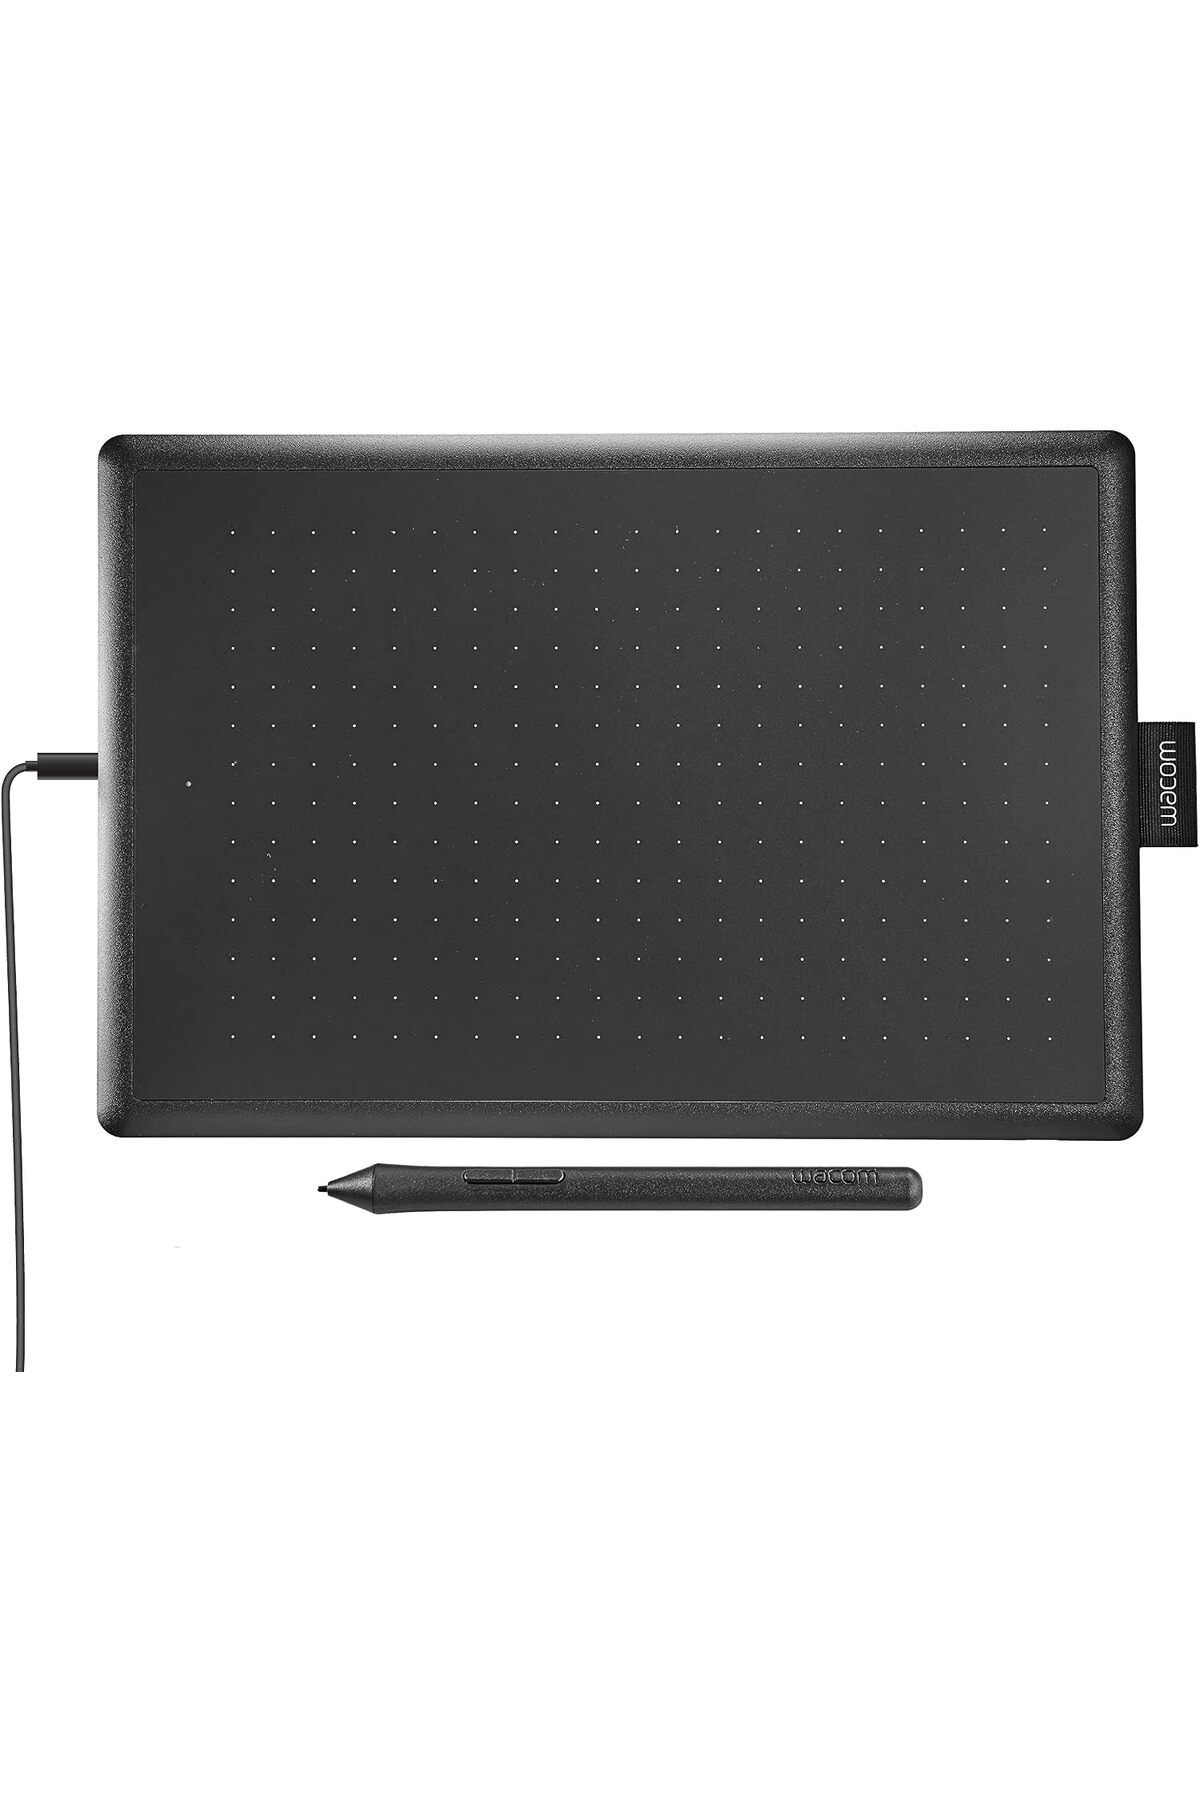 Wacom One Medium Grafik Çizim Tableti, Taşınabilir ve Çok Yönlü